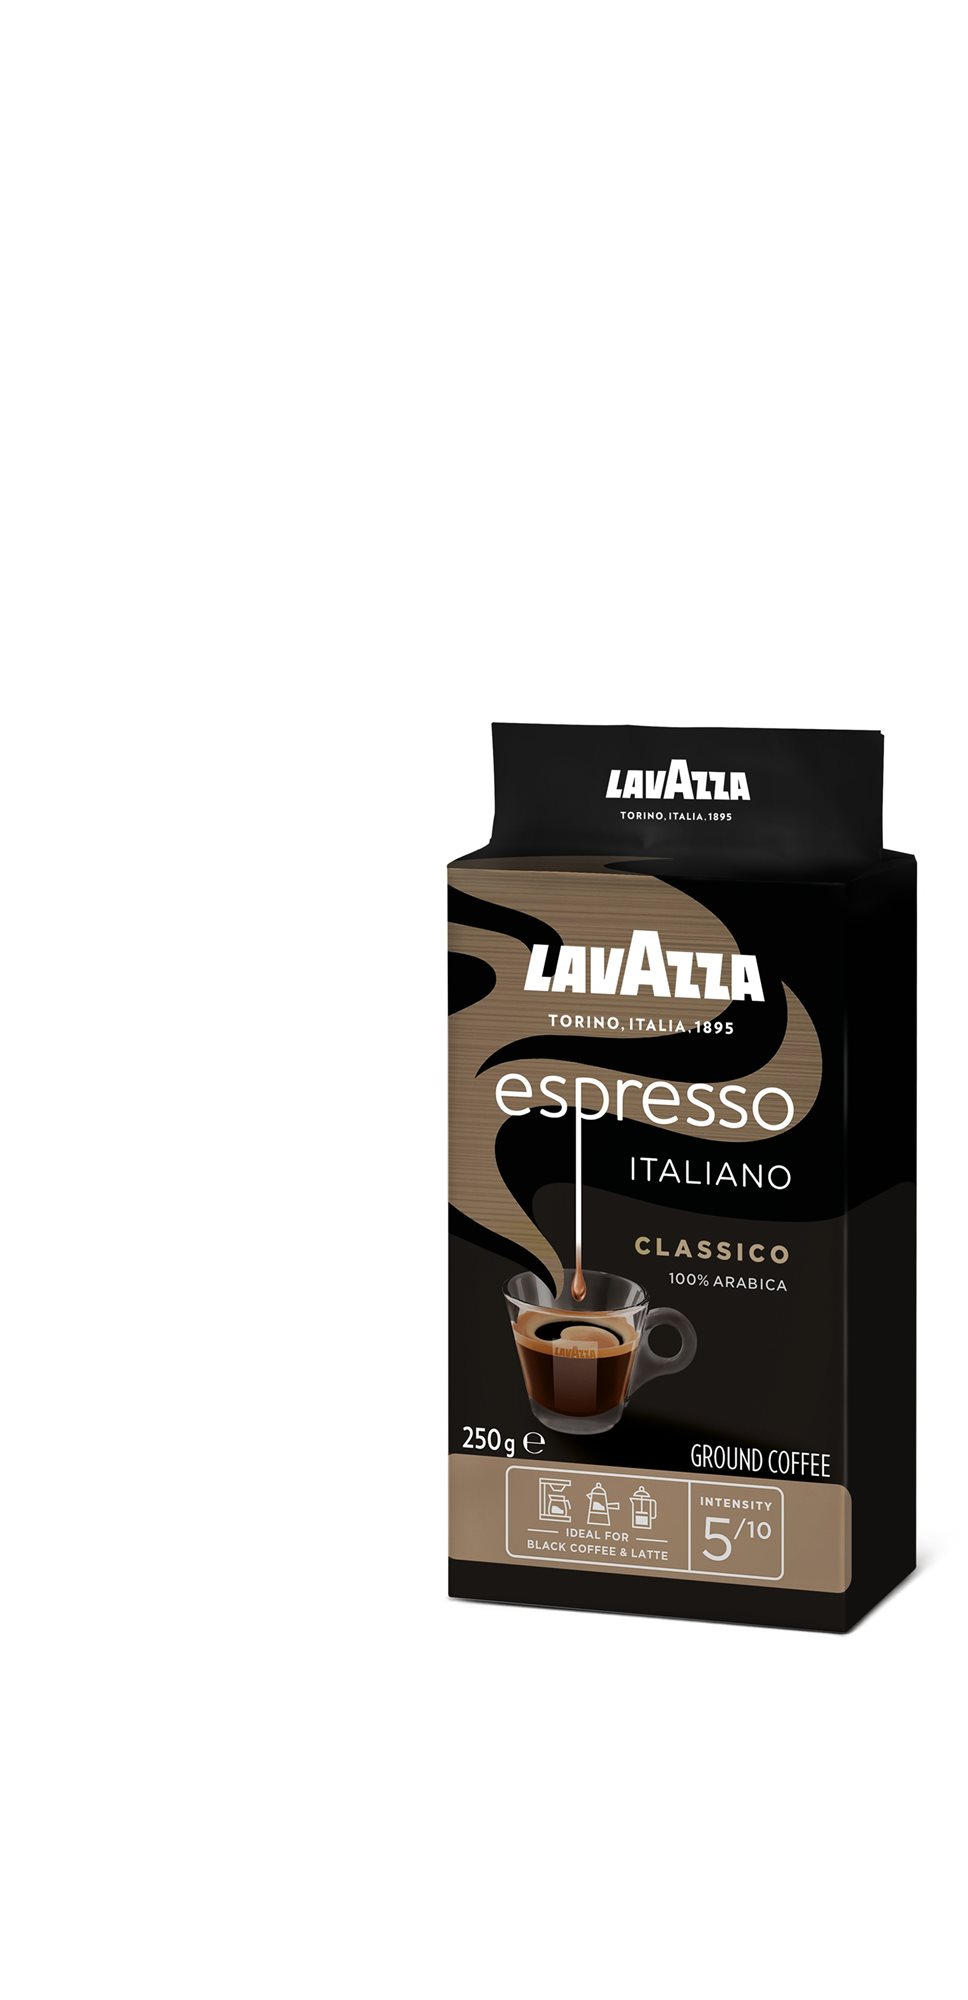 Kávé Lavazza Caffe Espresso, őrölt, 250g, vákuumcsomagolásban